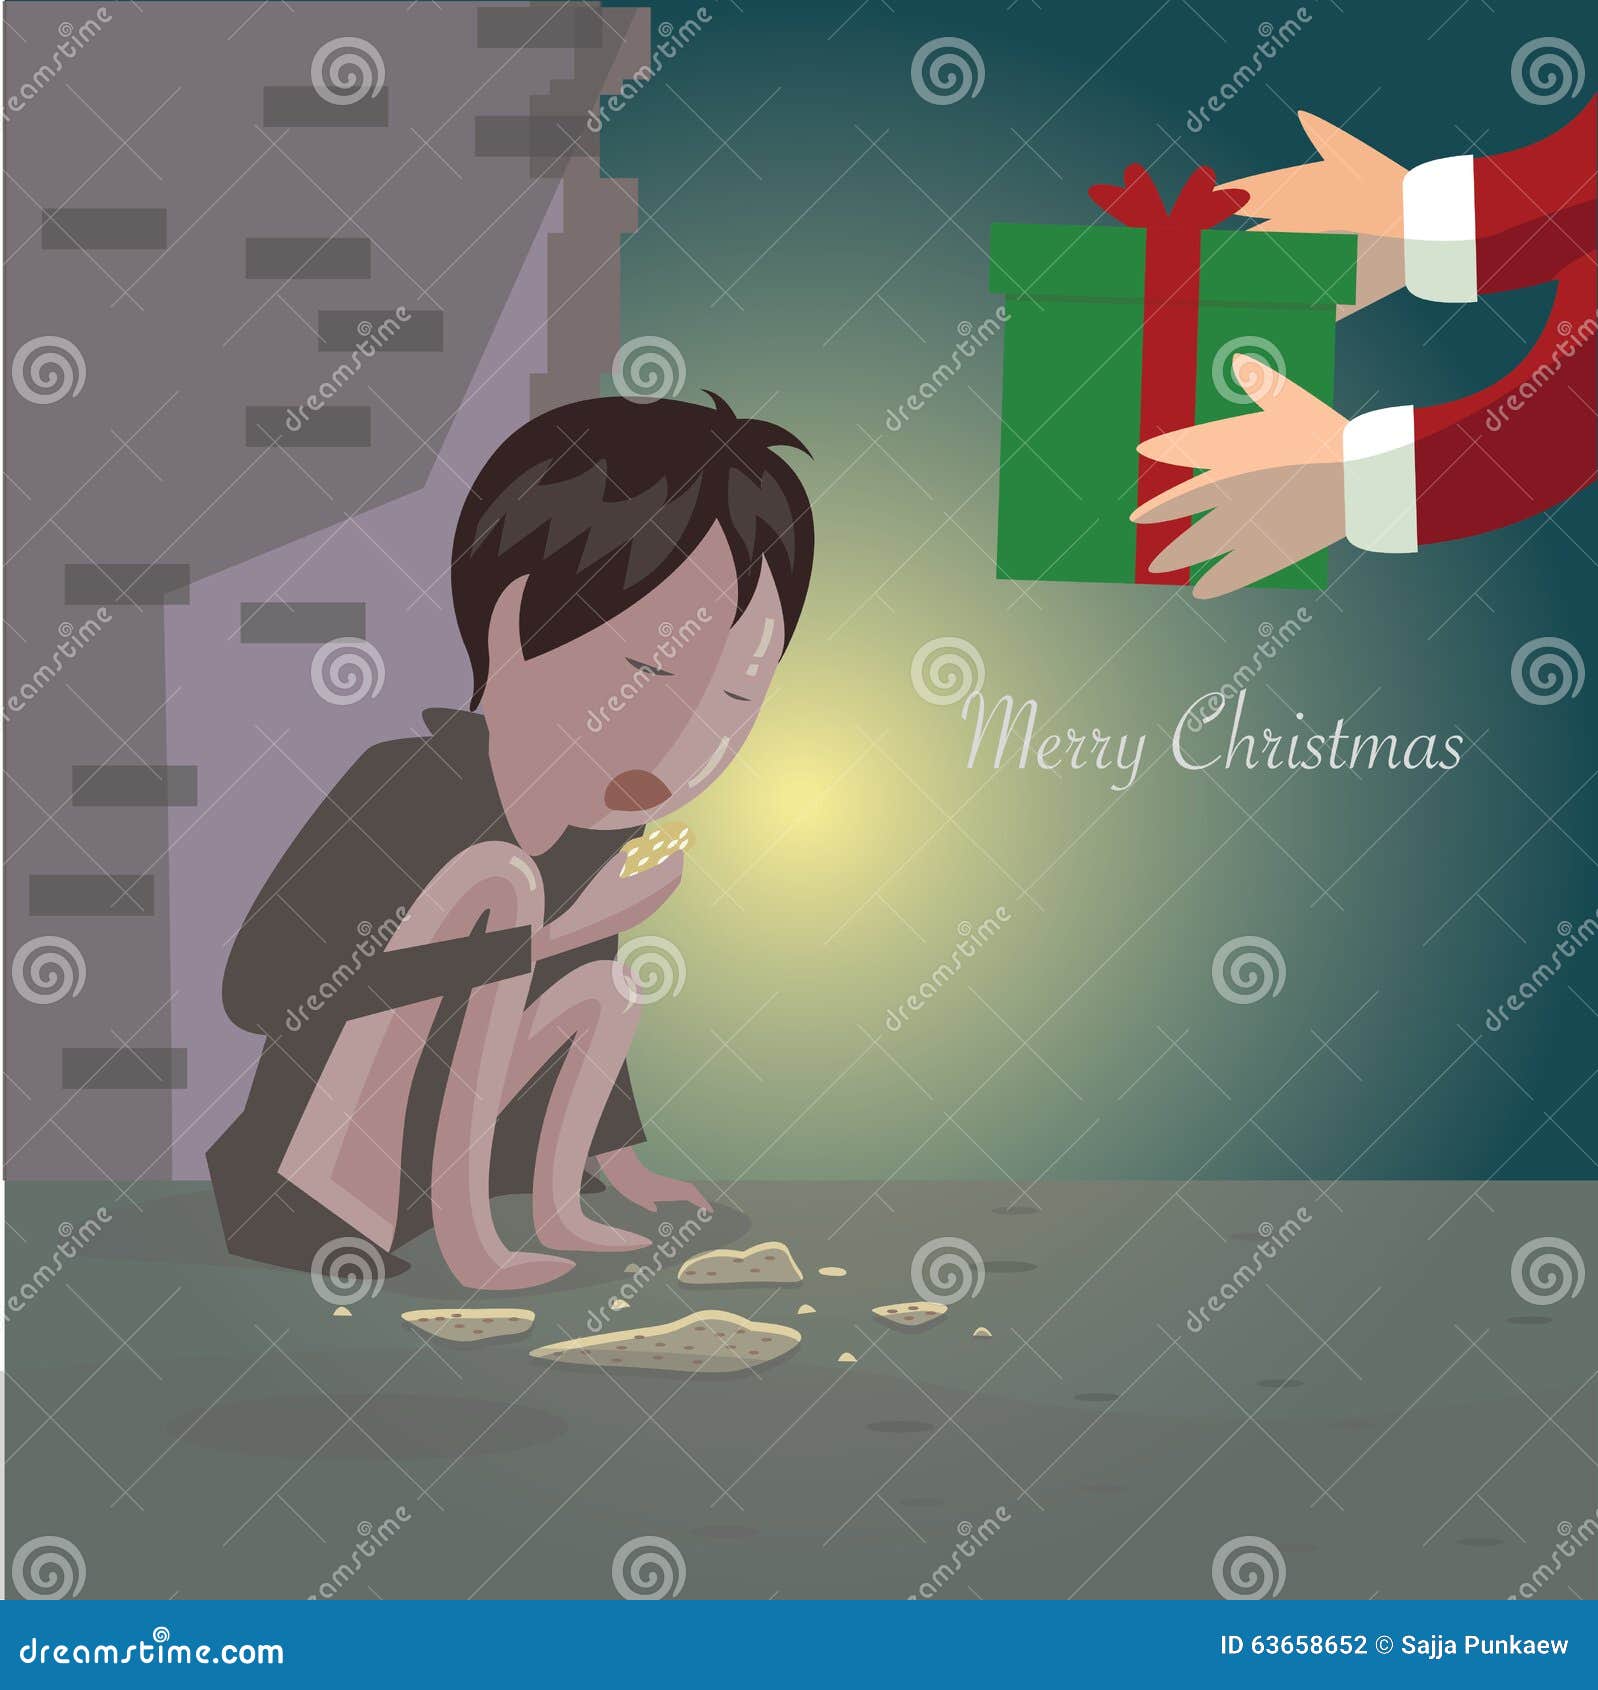 merry christmas for disadvantaged children.